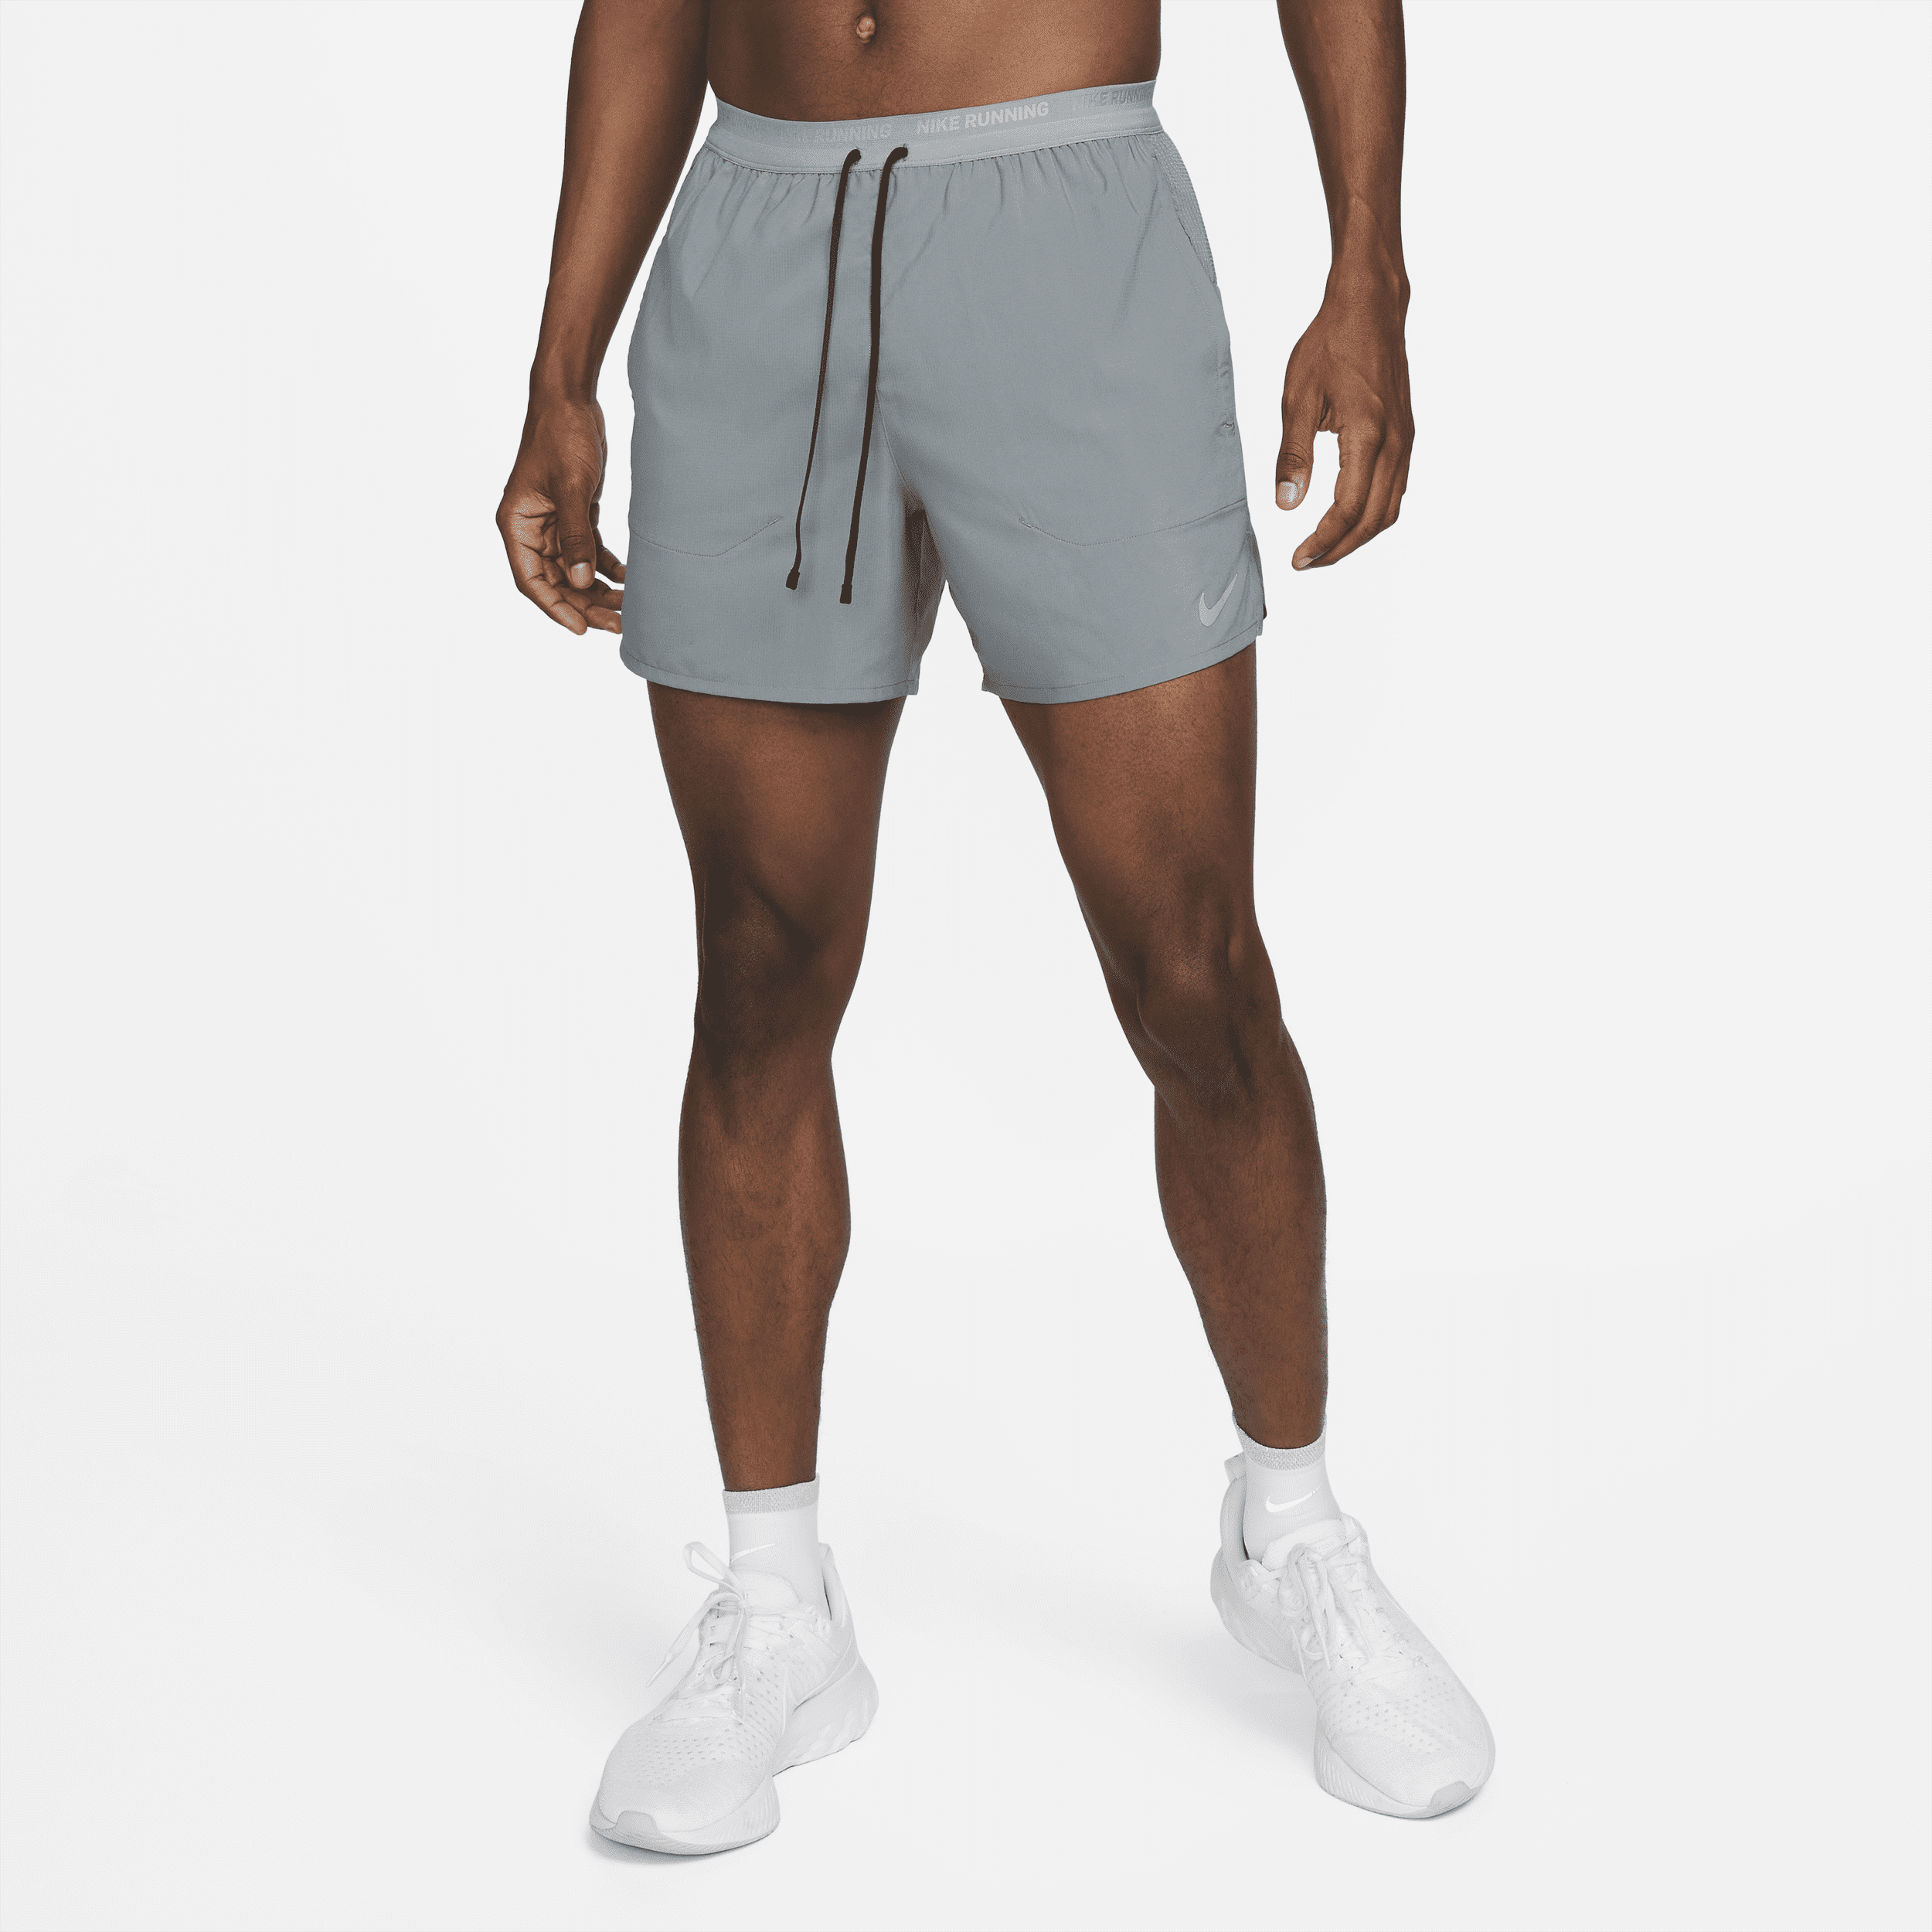 Shorts da running 13 cm con slip foderati Dri-FIT Nike Stride – Uomo - Grigio